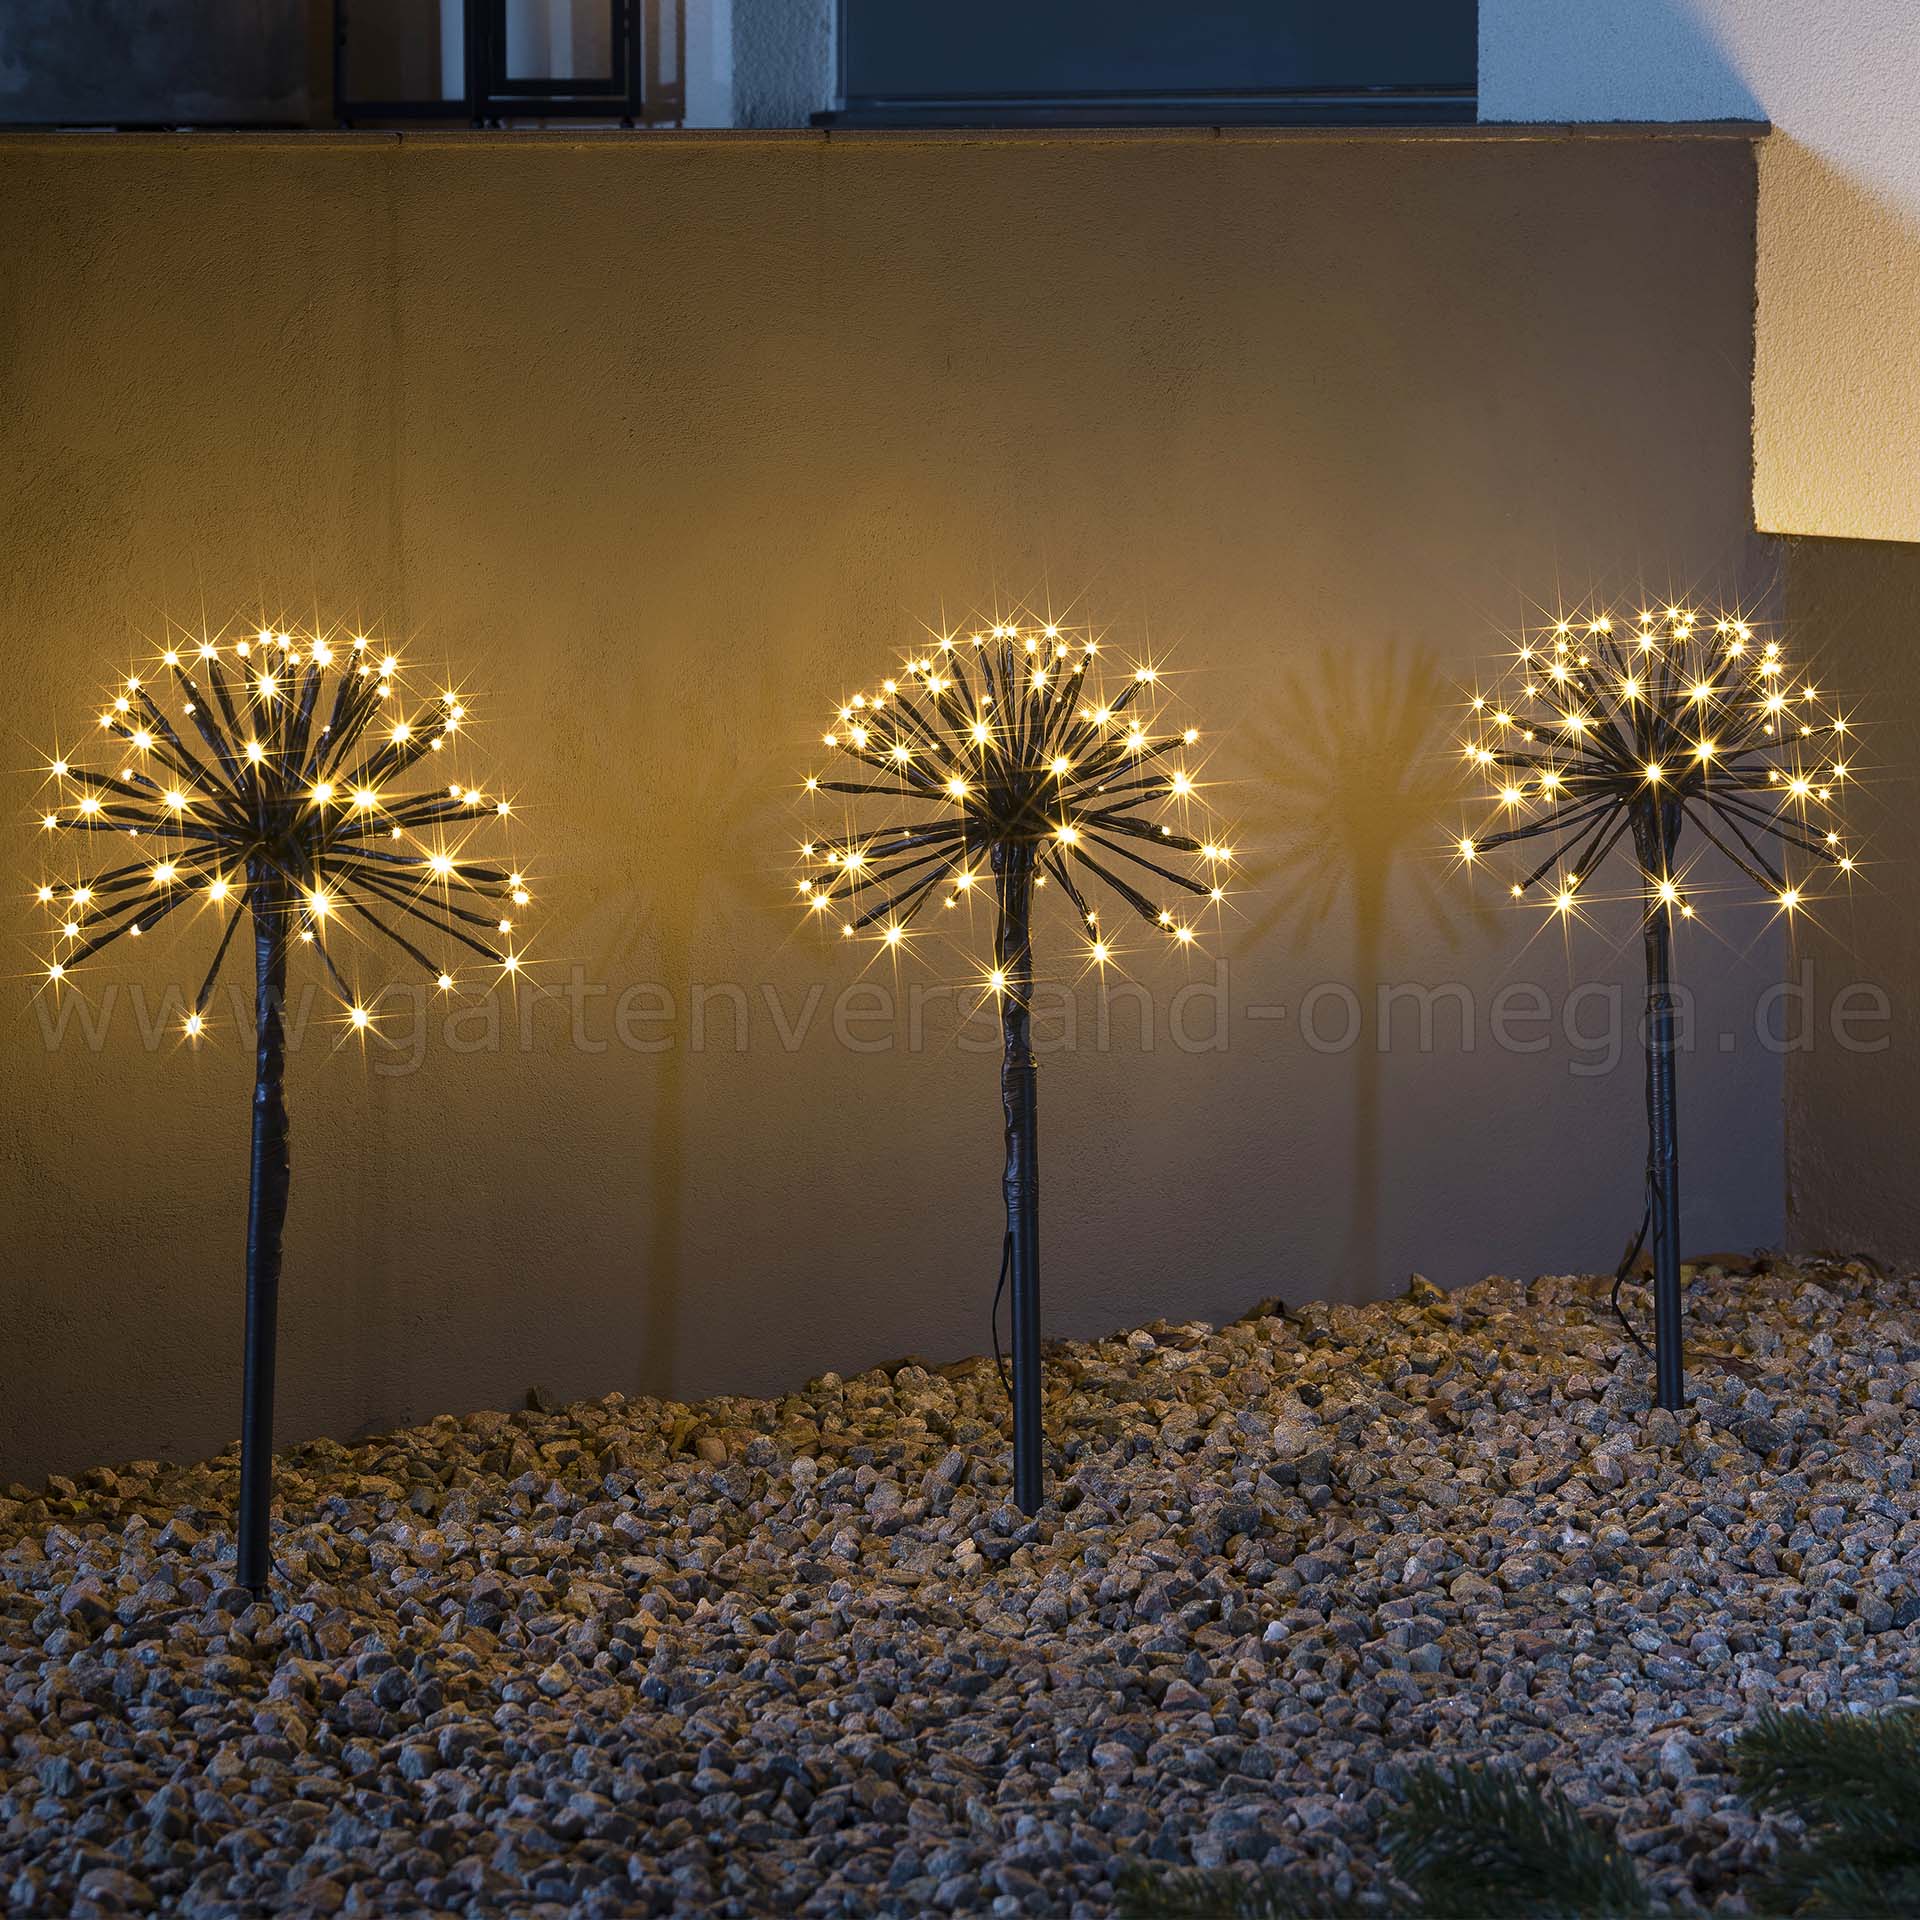 Gartenversand Omega Gartendekoration, Garten, Garten LED-Pusteblume, 3 - Weihnachtsdeko Pusteblume, LED-Spießleuchte für Leuchtstäbe, beleuchtete | mit Ganzjahresdekoration, Weihnachtsaußenbeleuchtung, Pusteblumen Weihnachtsbeleuchtung LED-Lichtstab, den